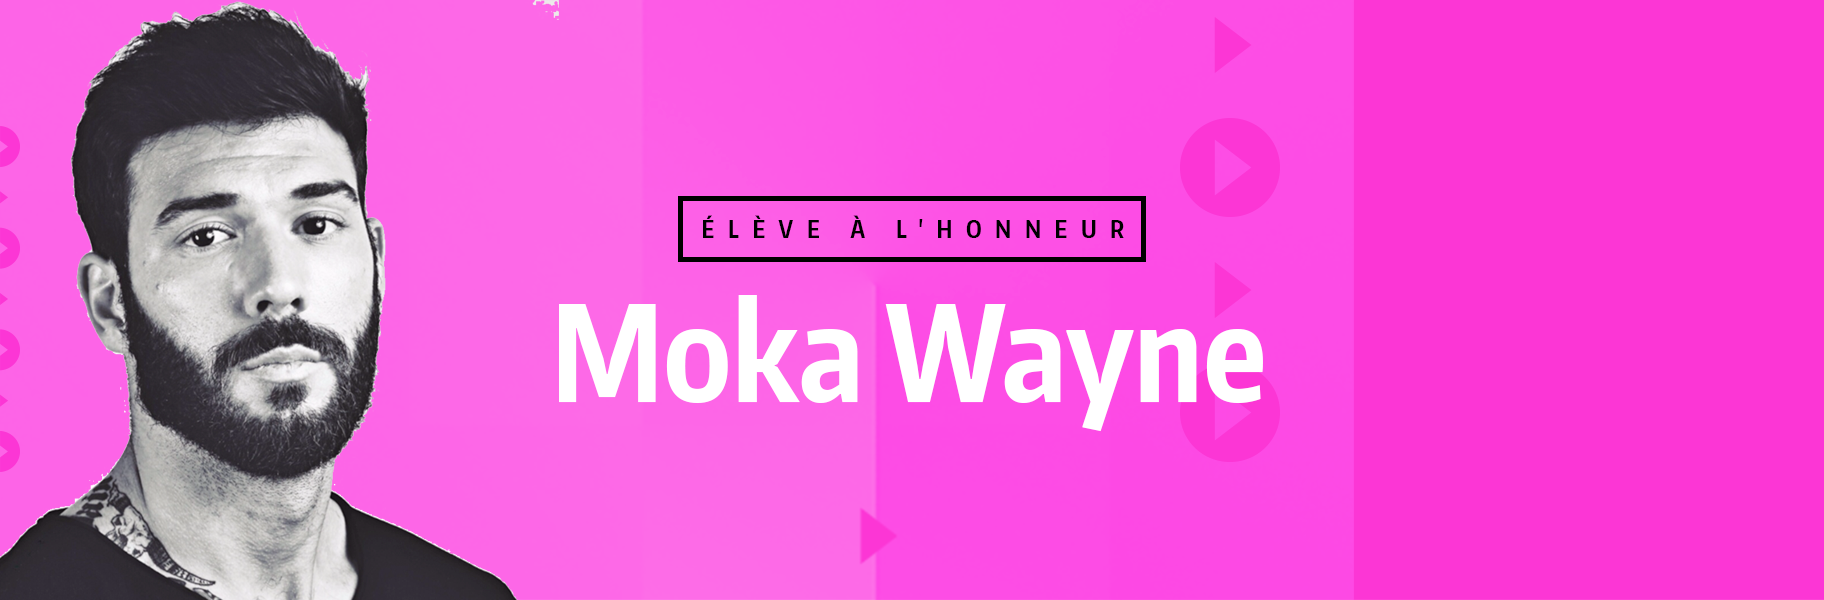 Élève à l'honneur - Moka Wayne